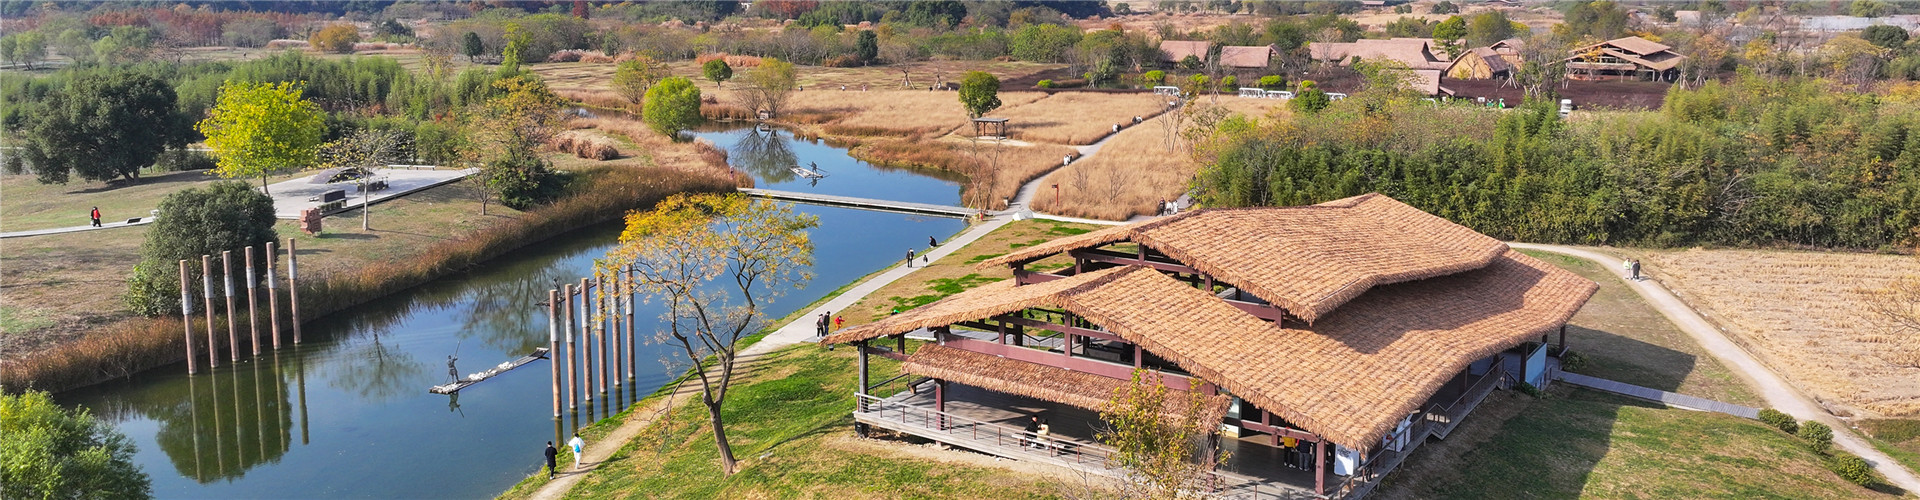 探访团专家：良渚古城与石家河遗址有许多共同特征